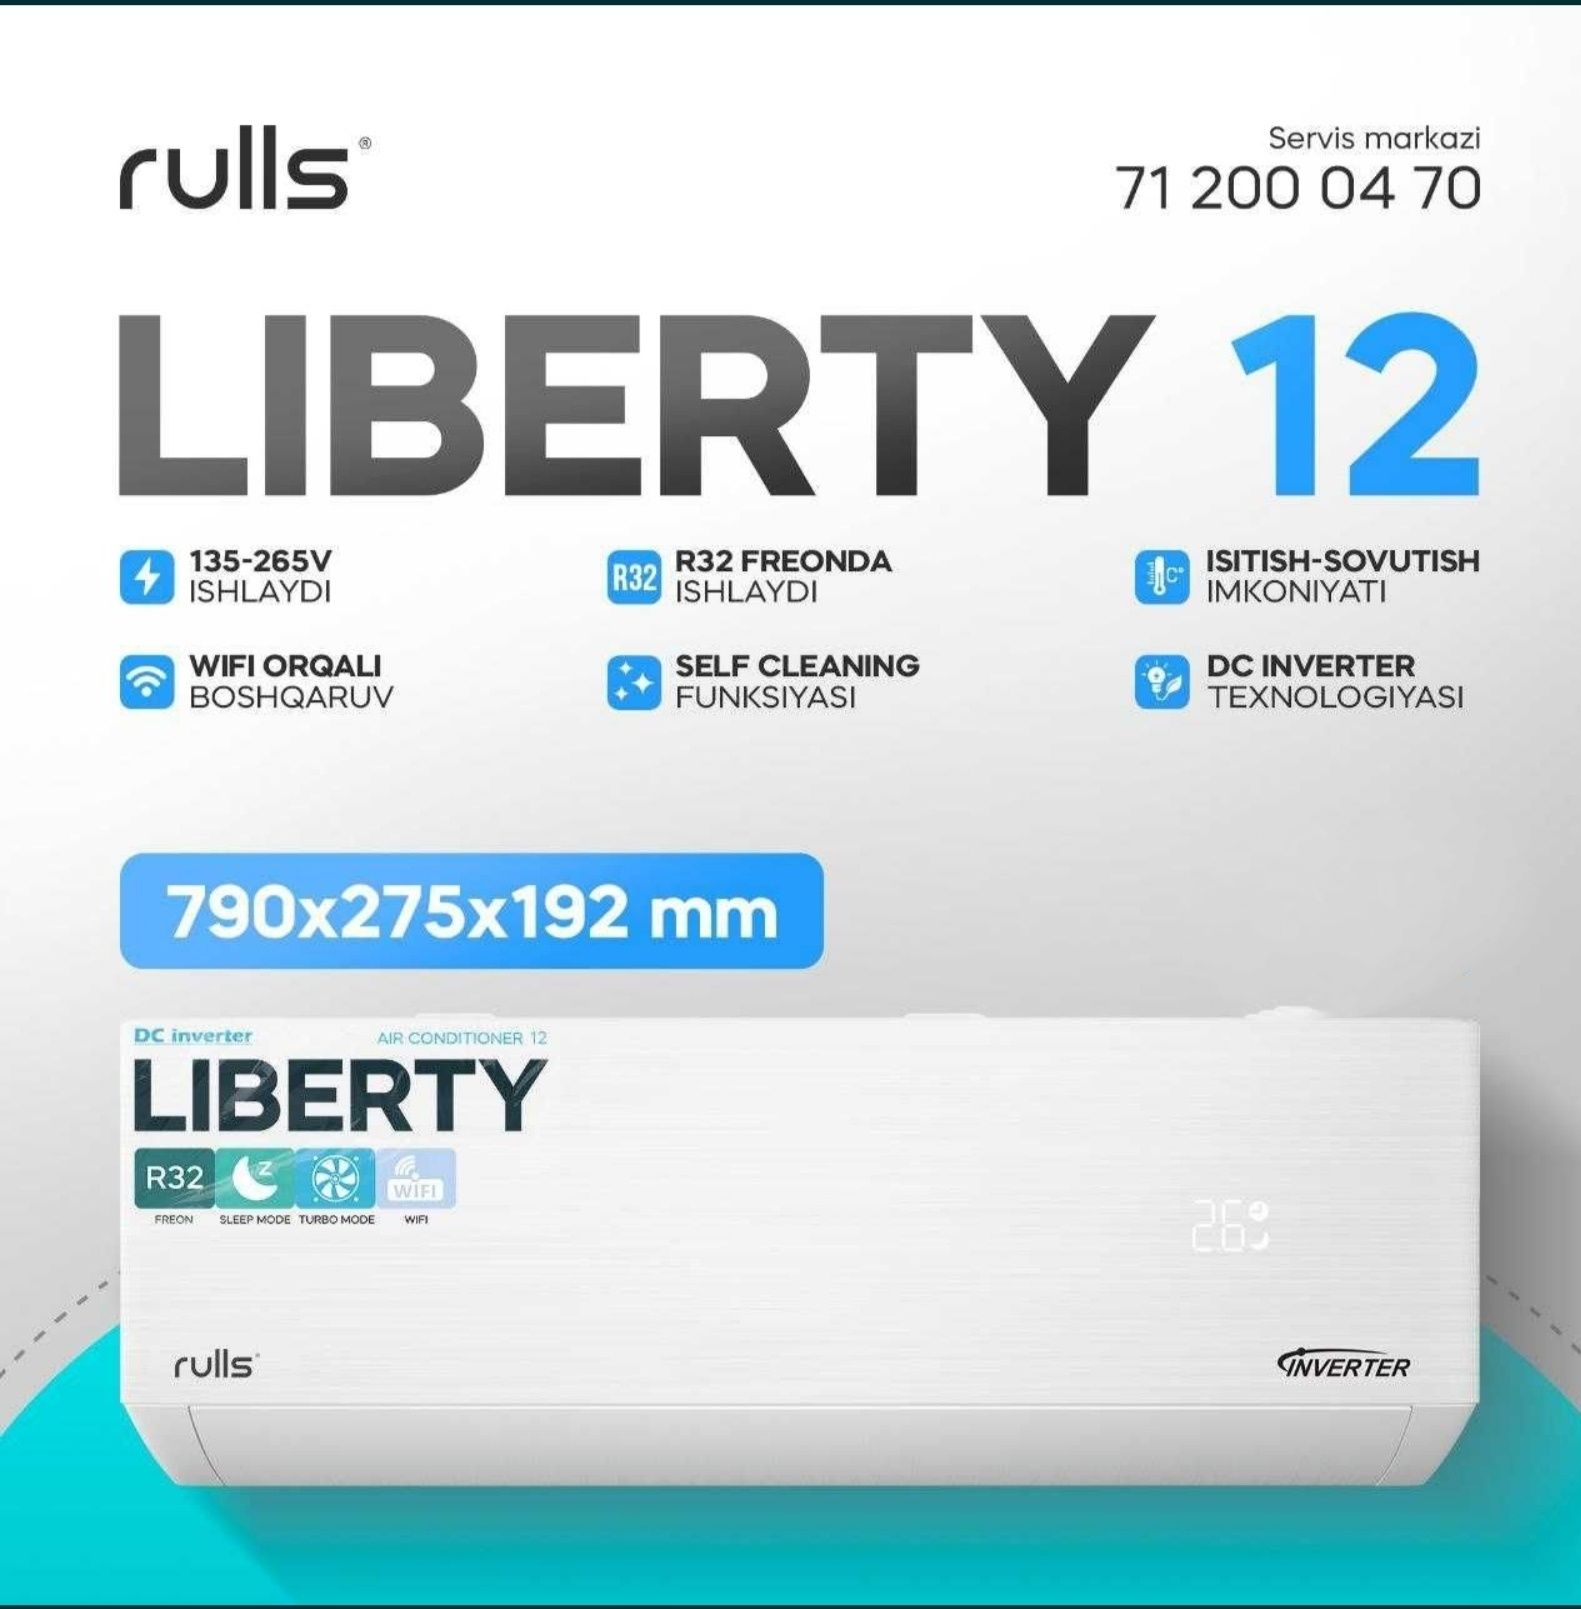 Кондиционер Rulls Liberty 12 Inverter 
Управление Wi-Fi;
Турбо-режим;